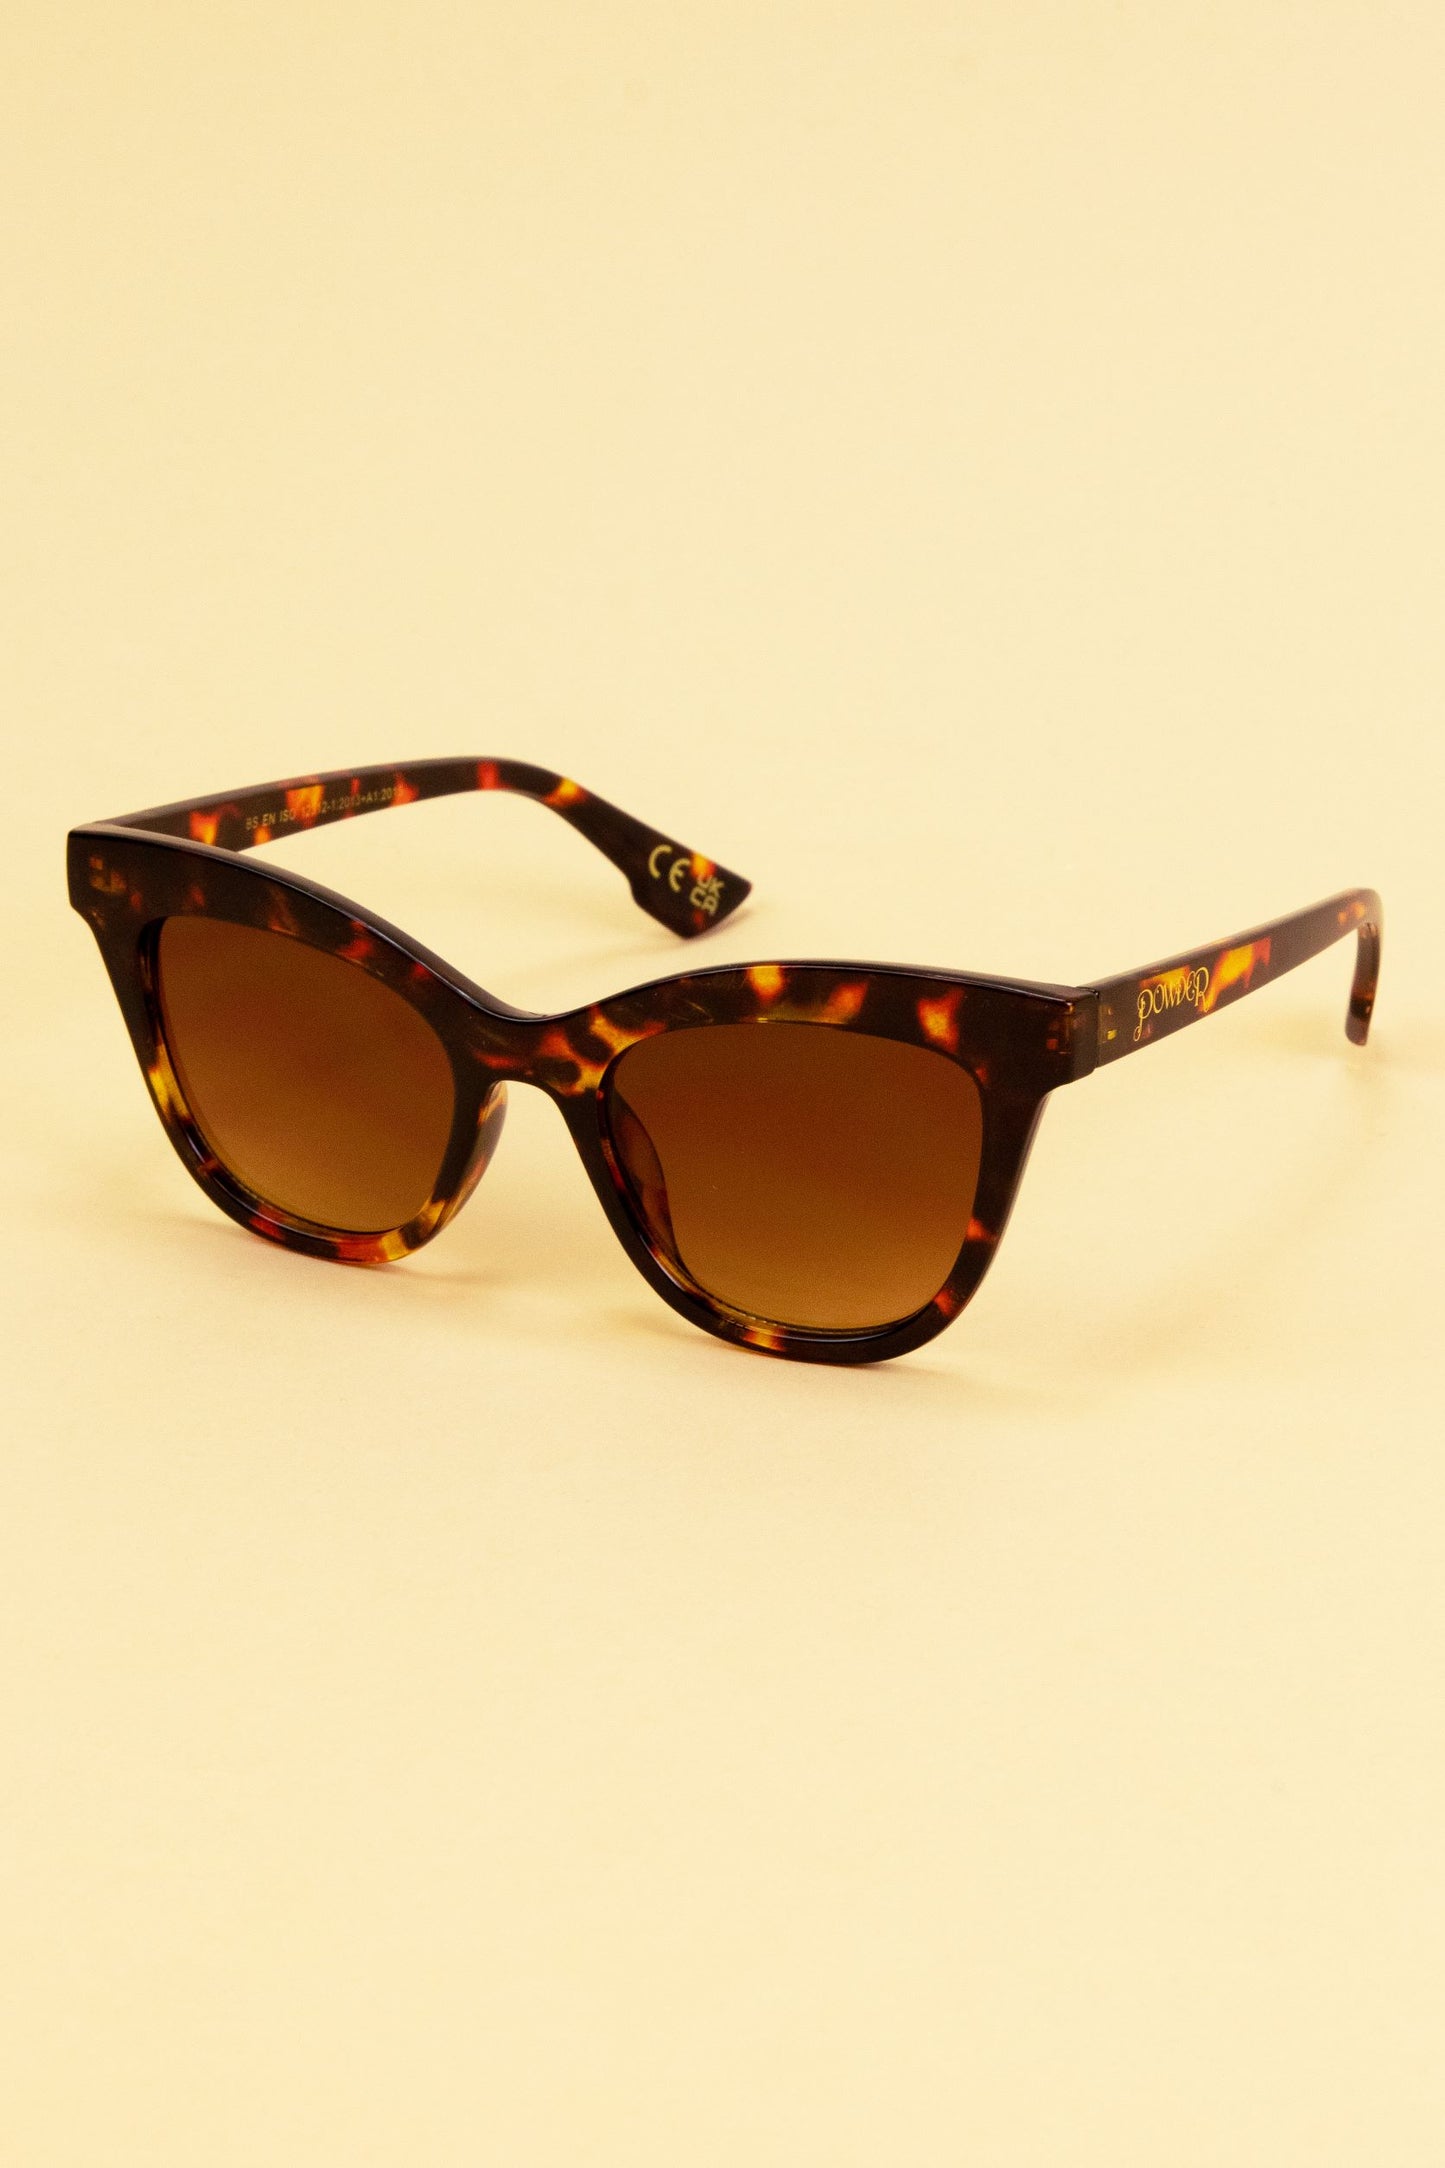 Nadia Limited Edition Ladies Sunglasses Tortiseshell